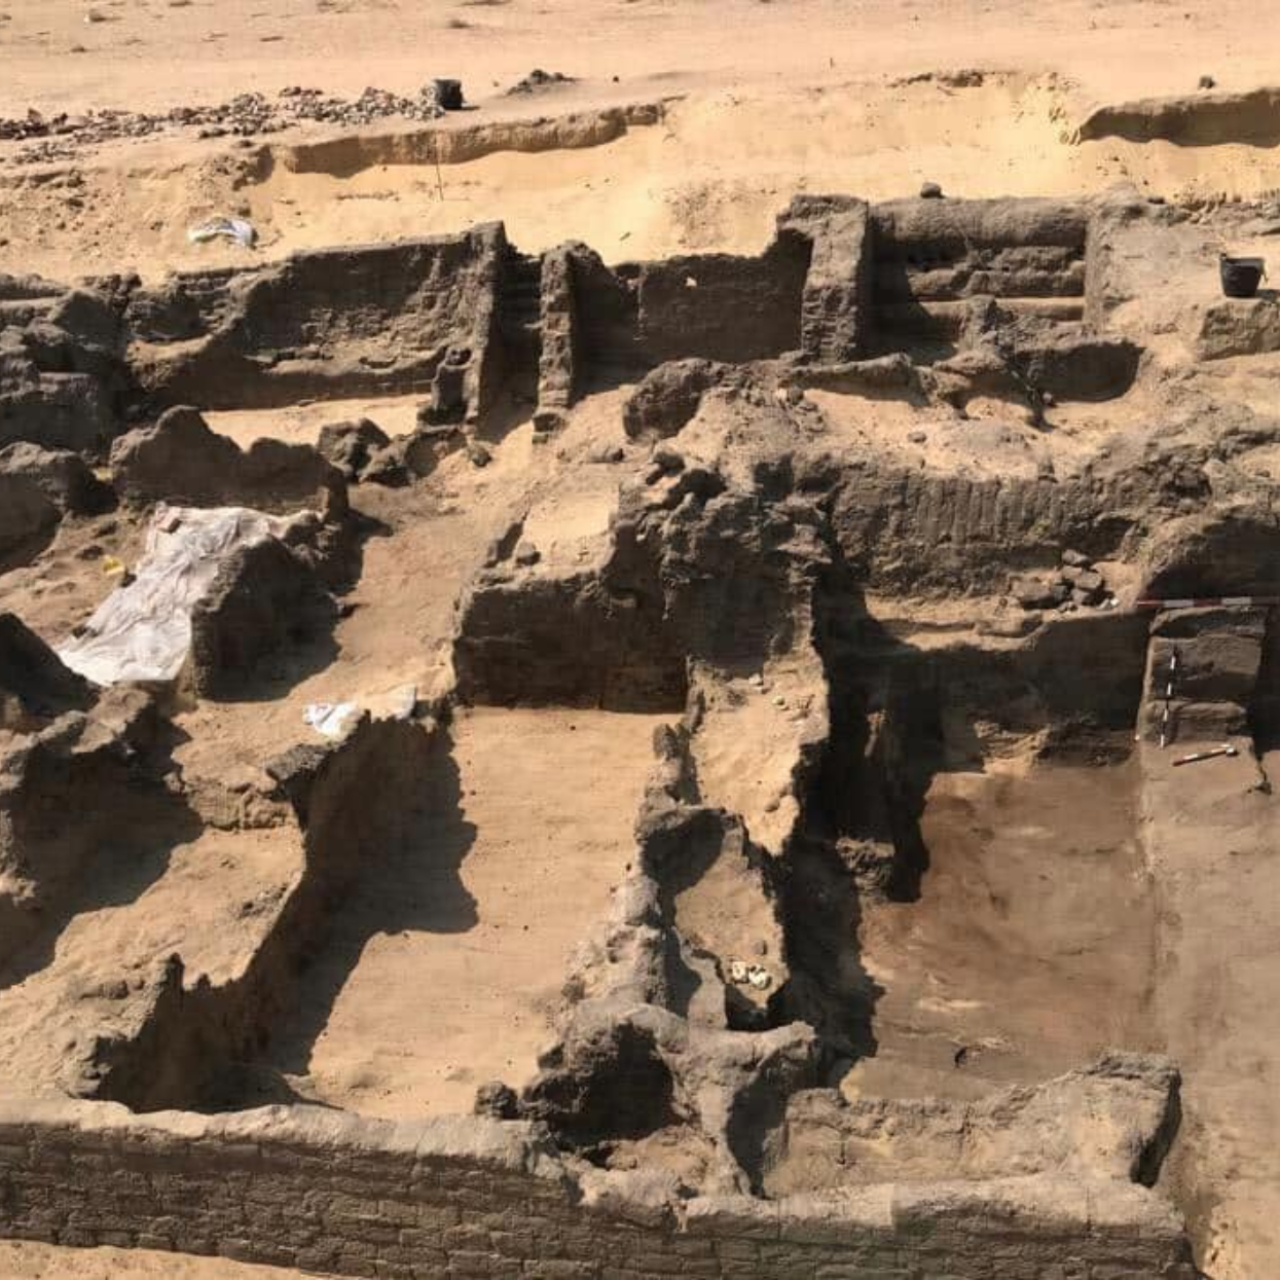 Fotografia de cemitério em que múmias e línguas de ouro foram descobertas